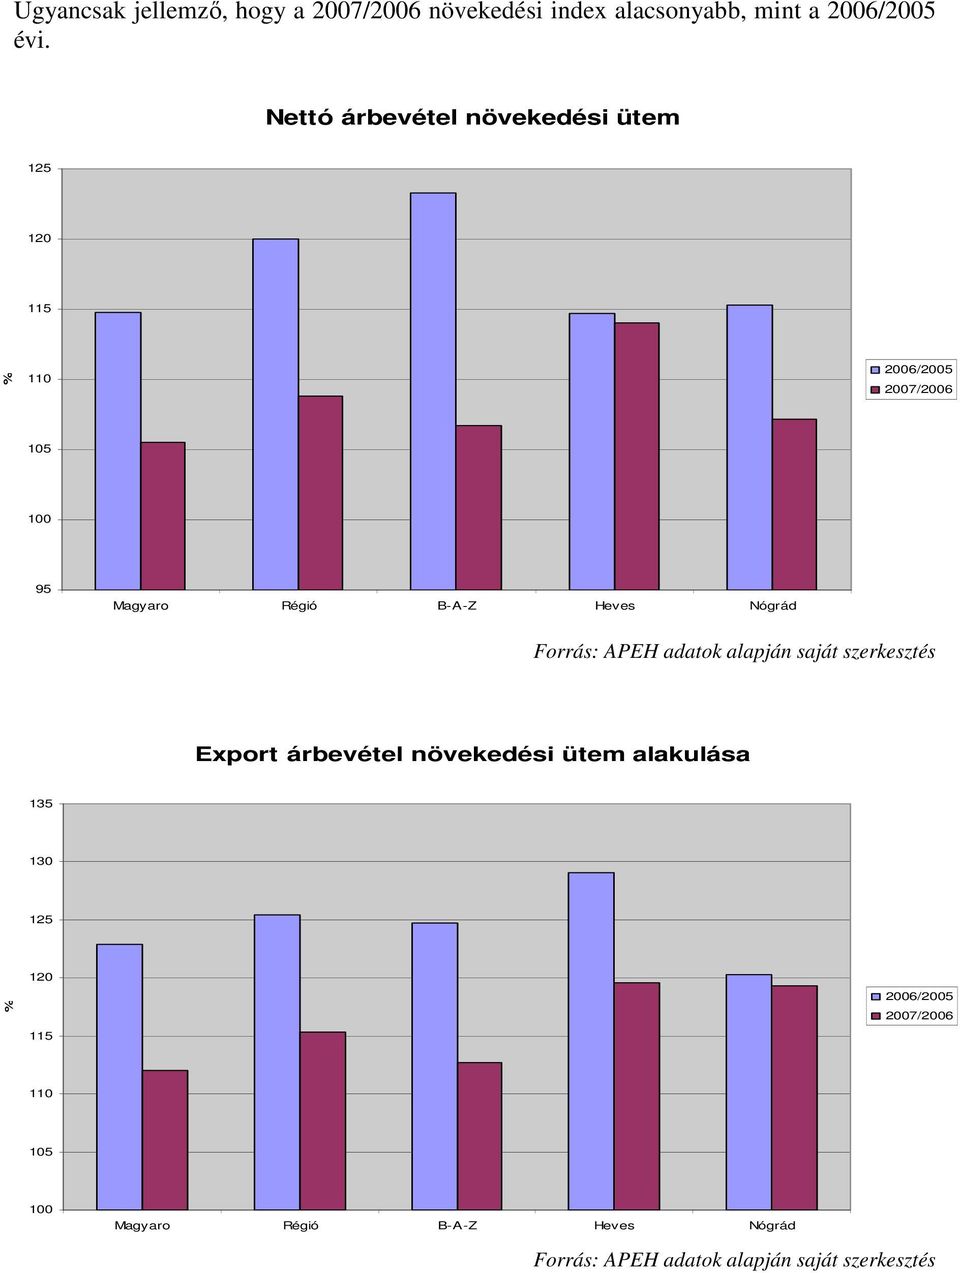 Nógrád Forrás: APEH adatok alapján saját szerkesztés Export árbevétel növekedési ütem alakulása